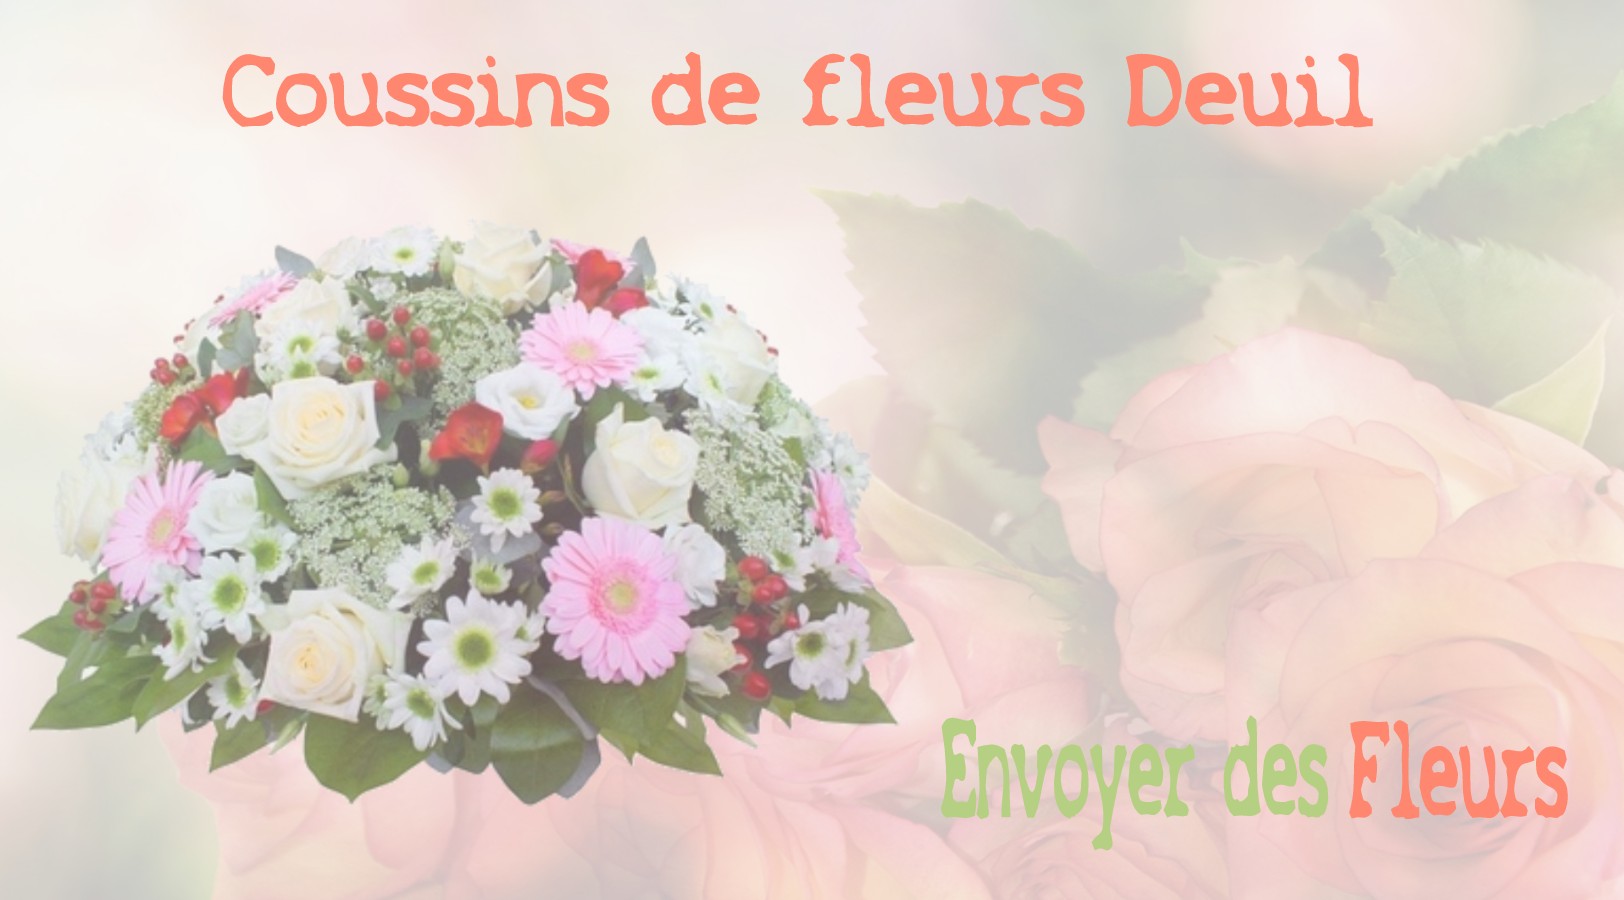 Les coussins de fleurs deuil - LIVRAISON FLEURS DEUIL A CHANTELOUP-EN-BRIE 77